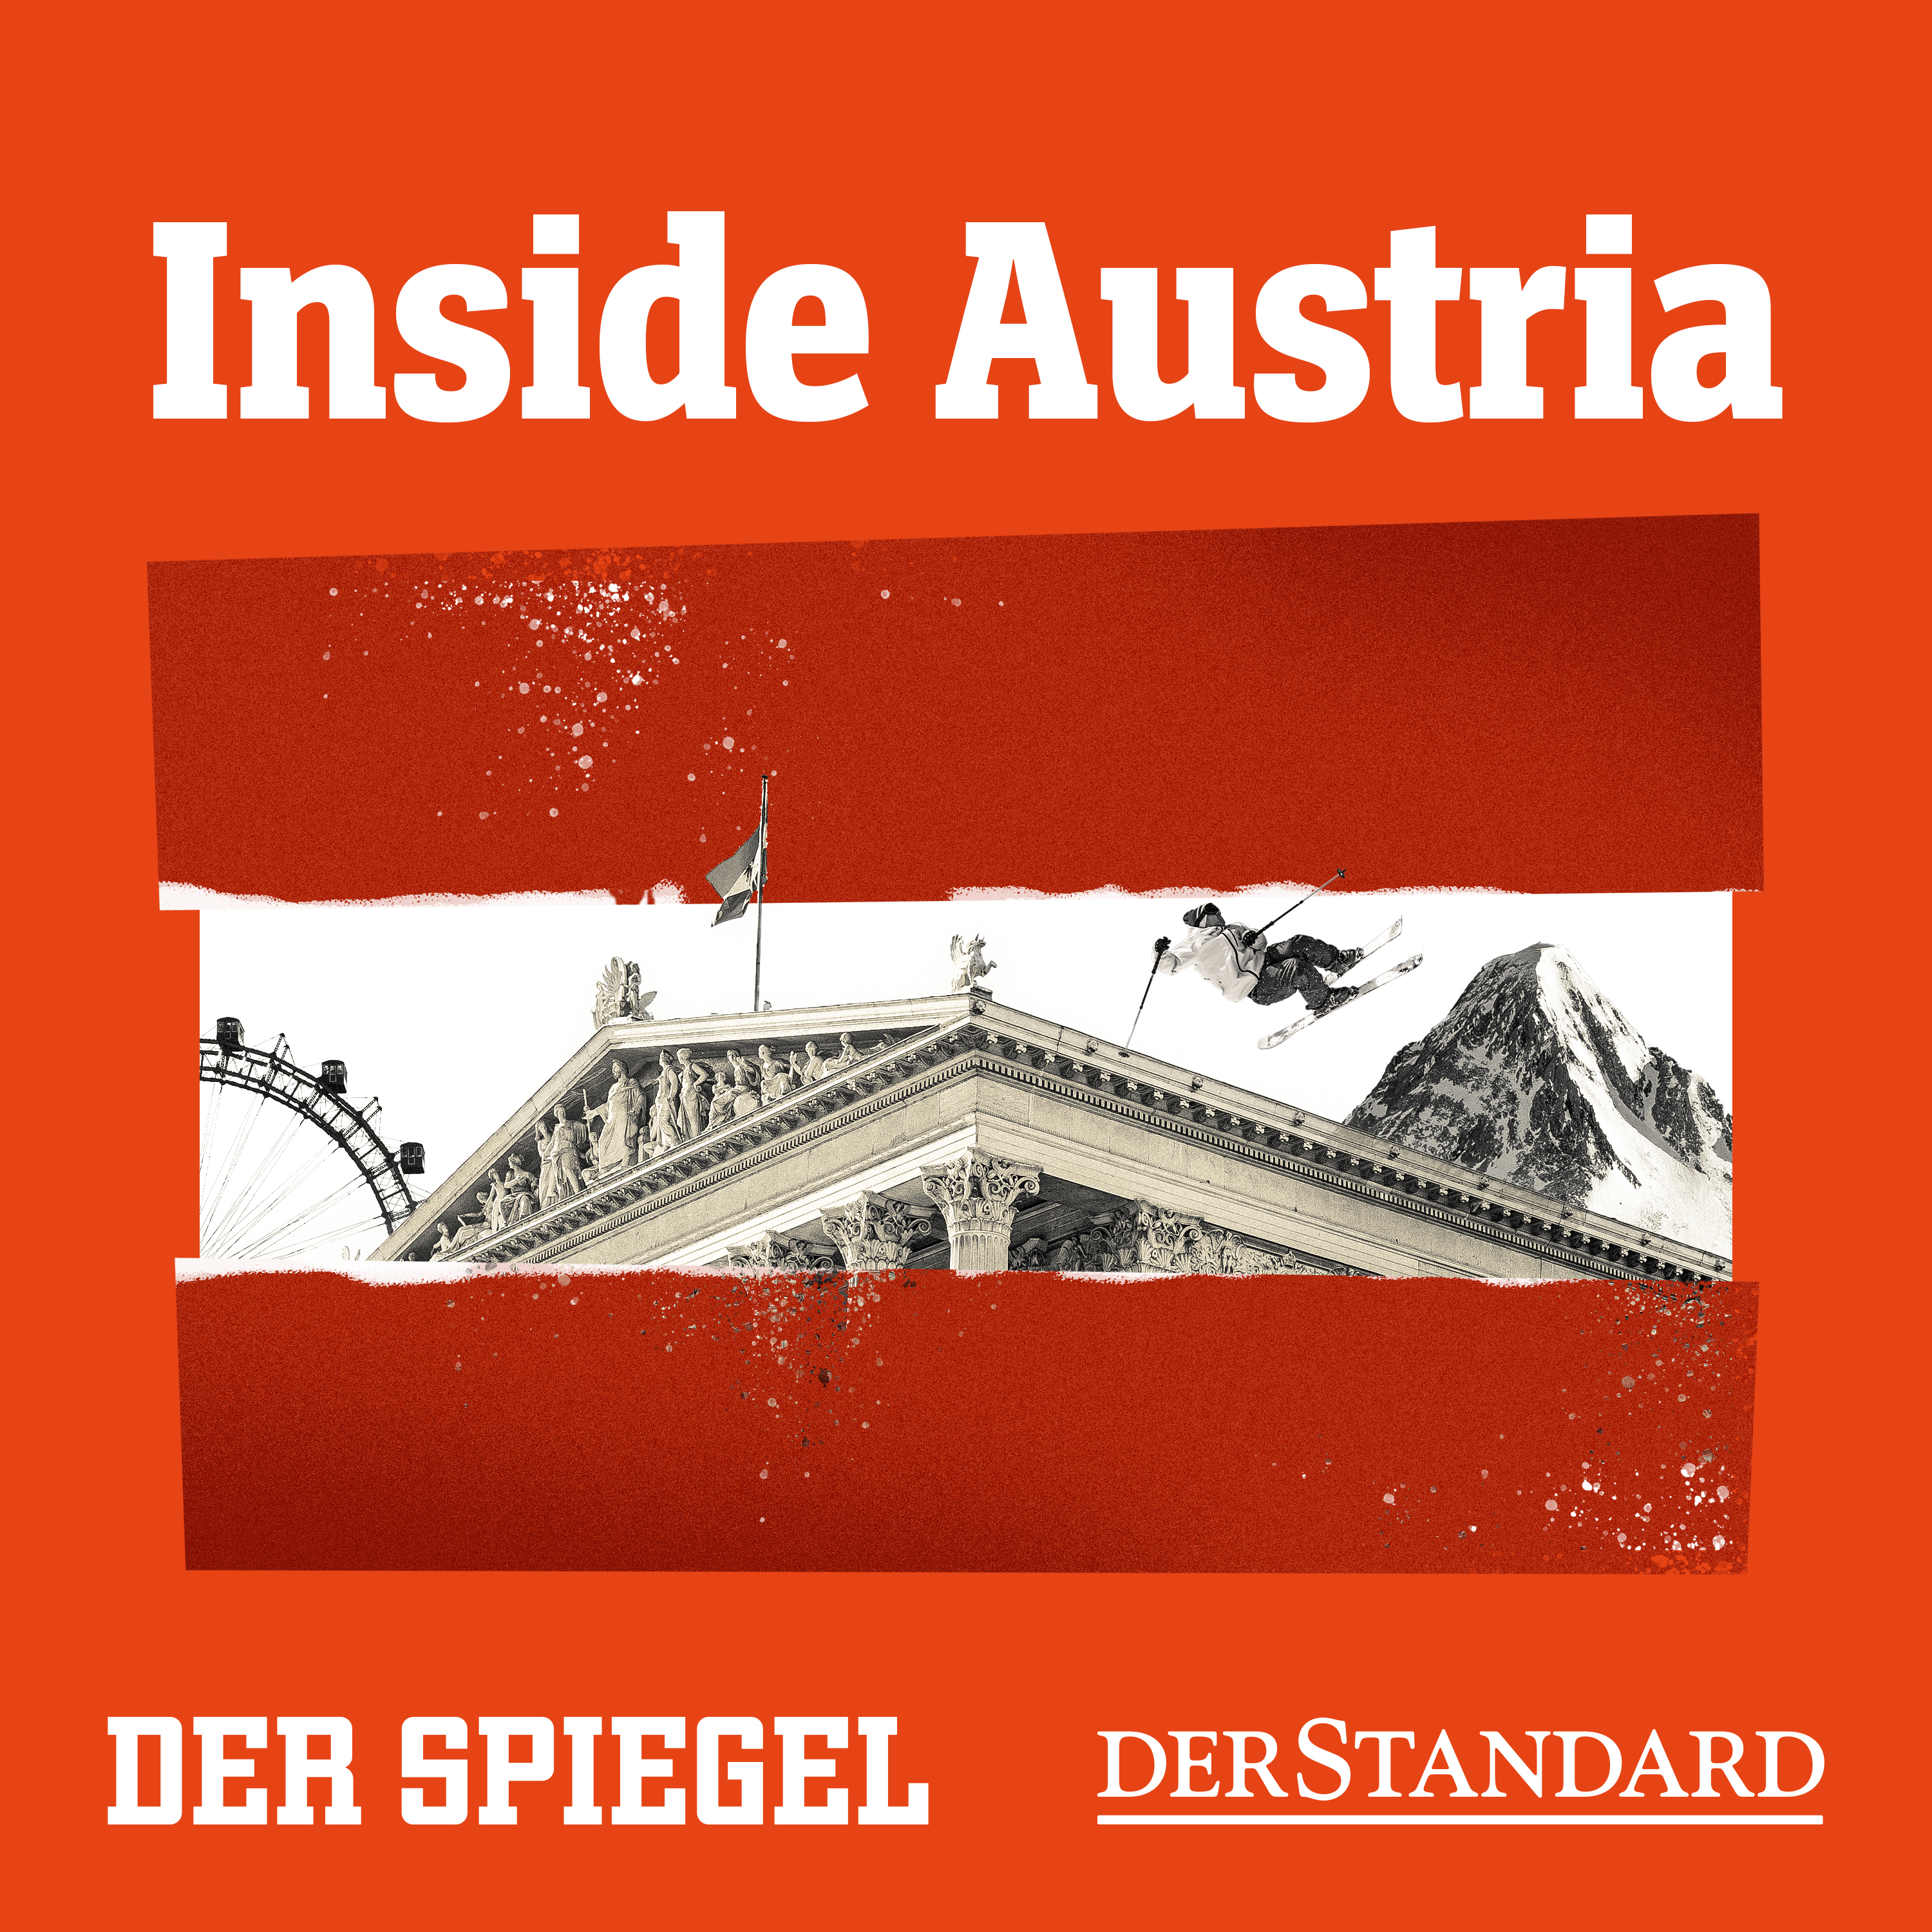 Inside Austria - Österreichs große und kleine Skandale